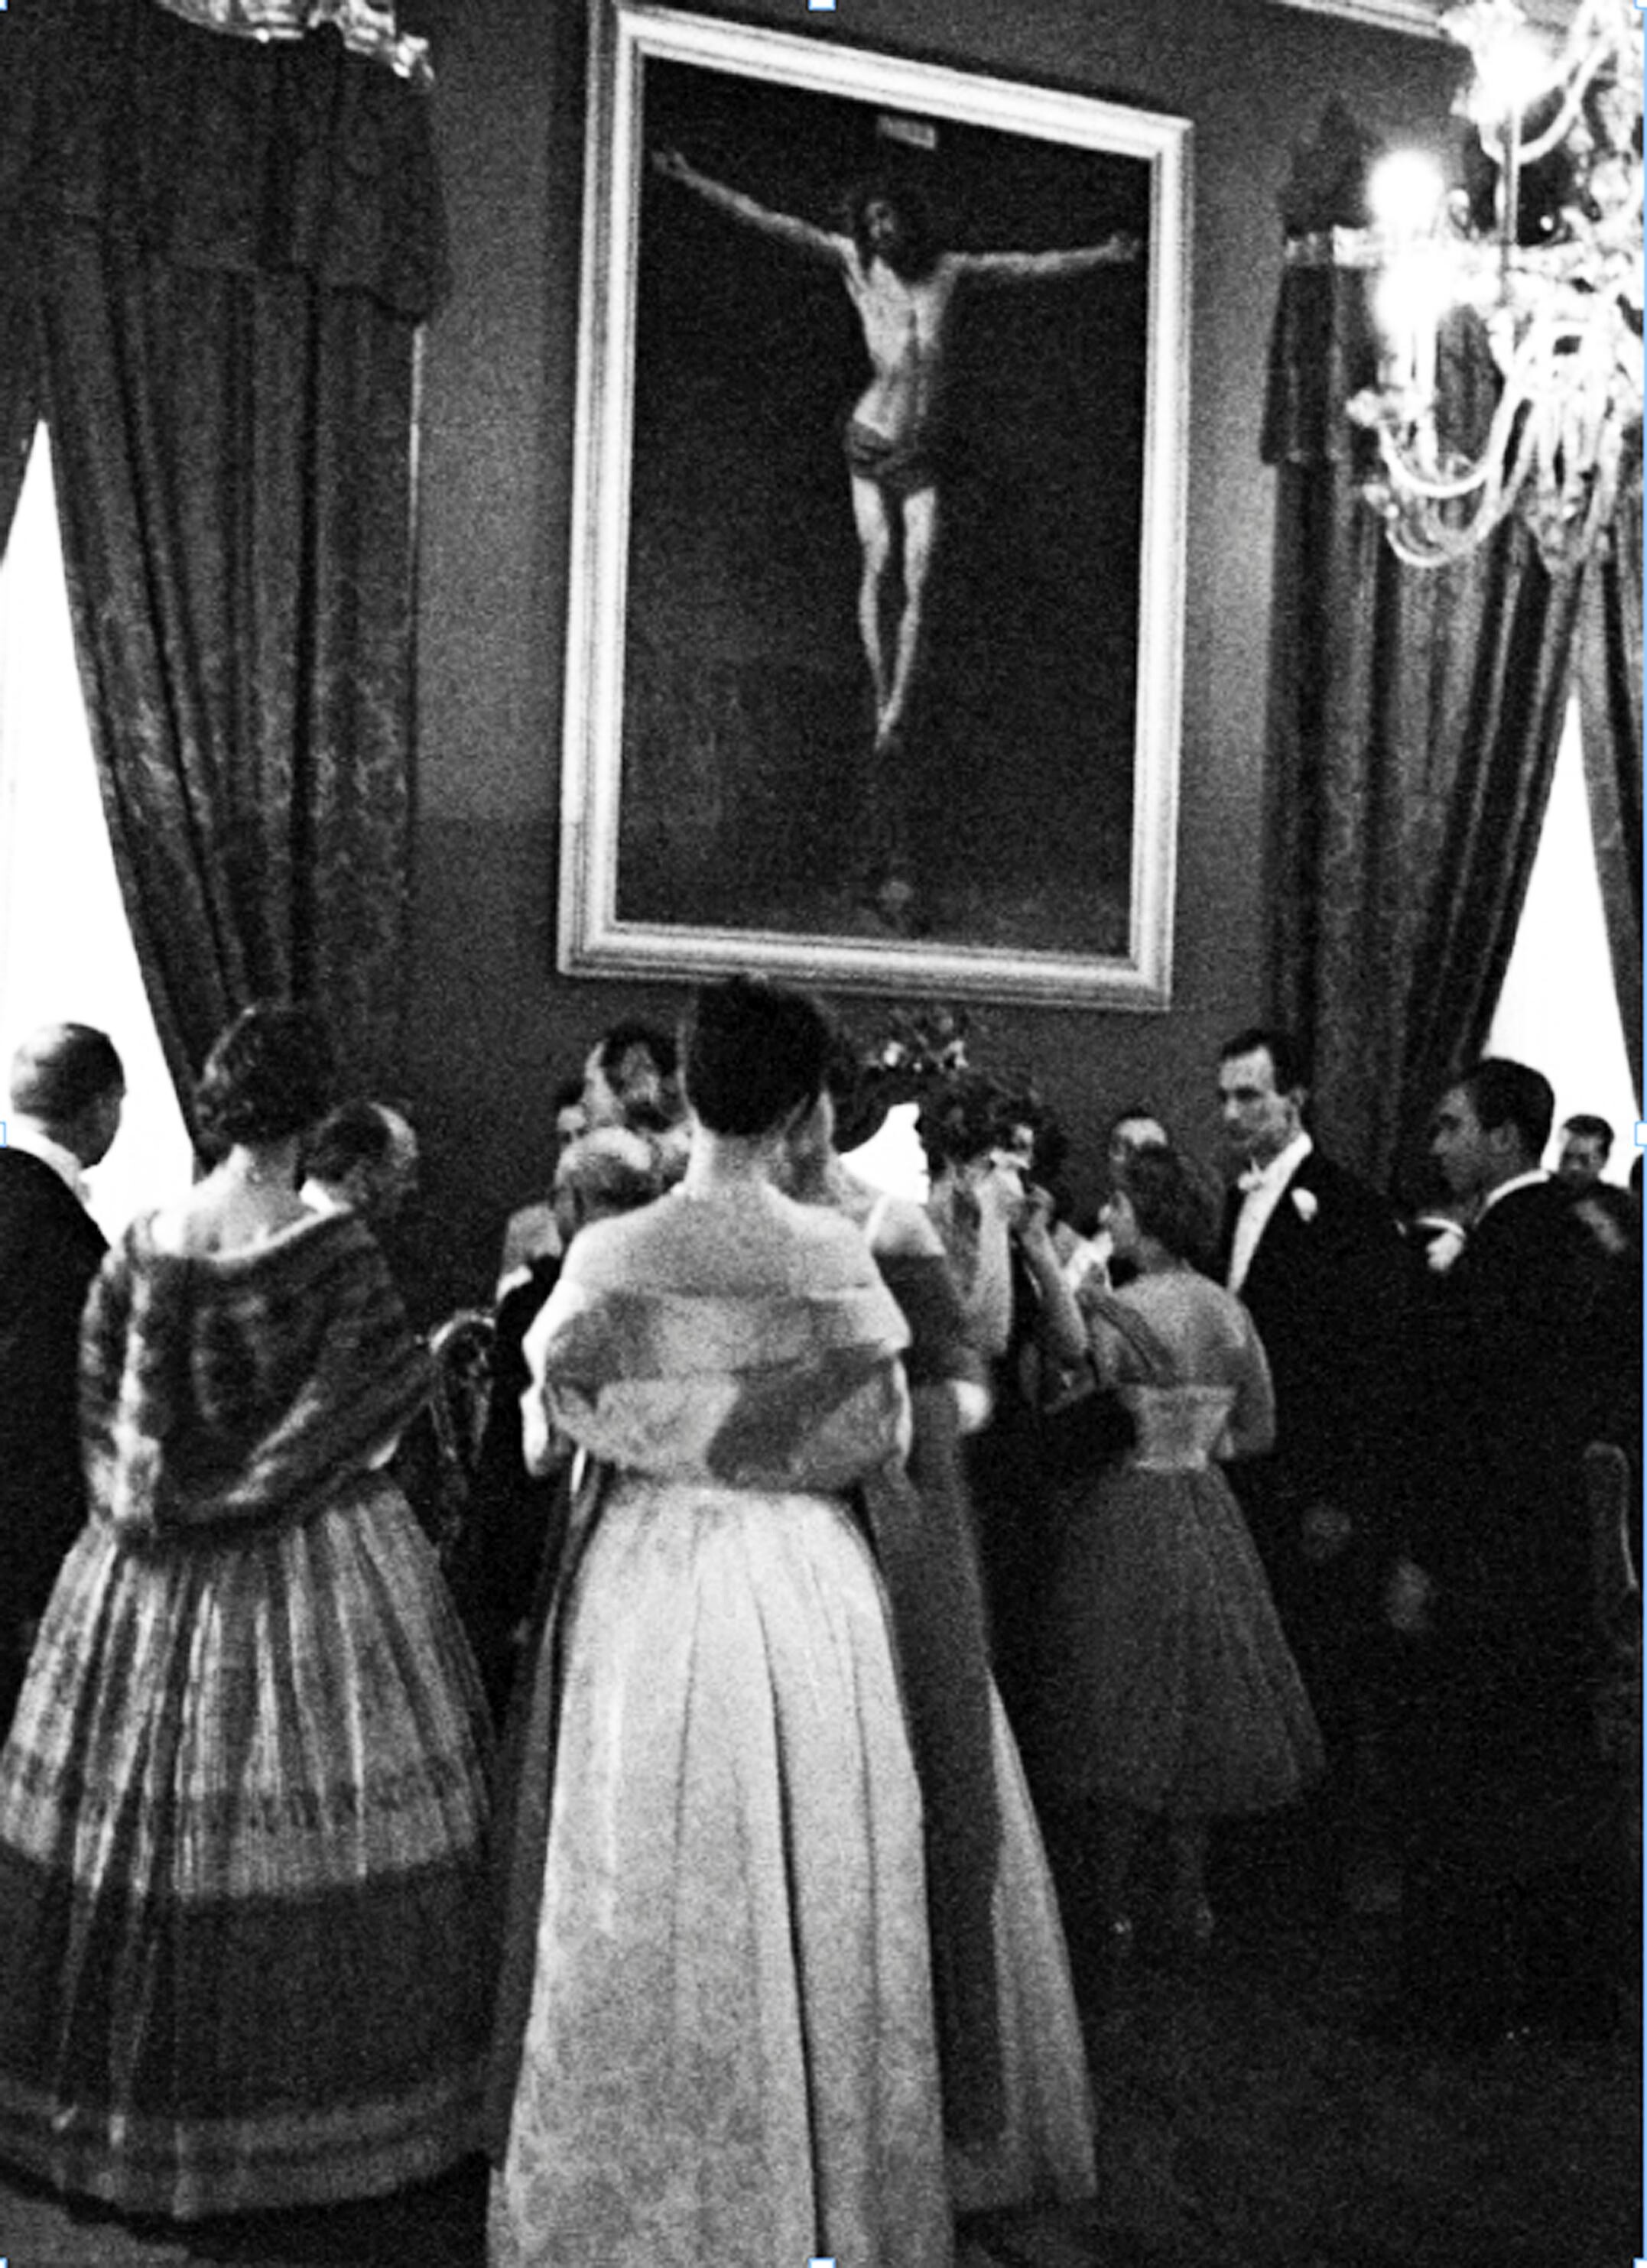 Христос в терновом венце, картина Гвидо Рени, 1955 год. Фотограф Паоло Ди Паоло